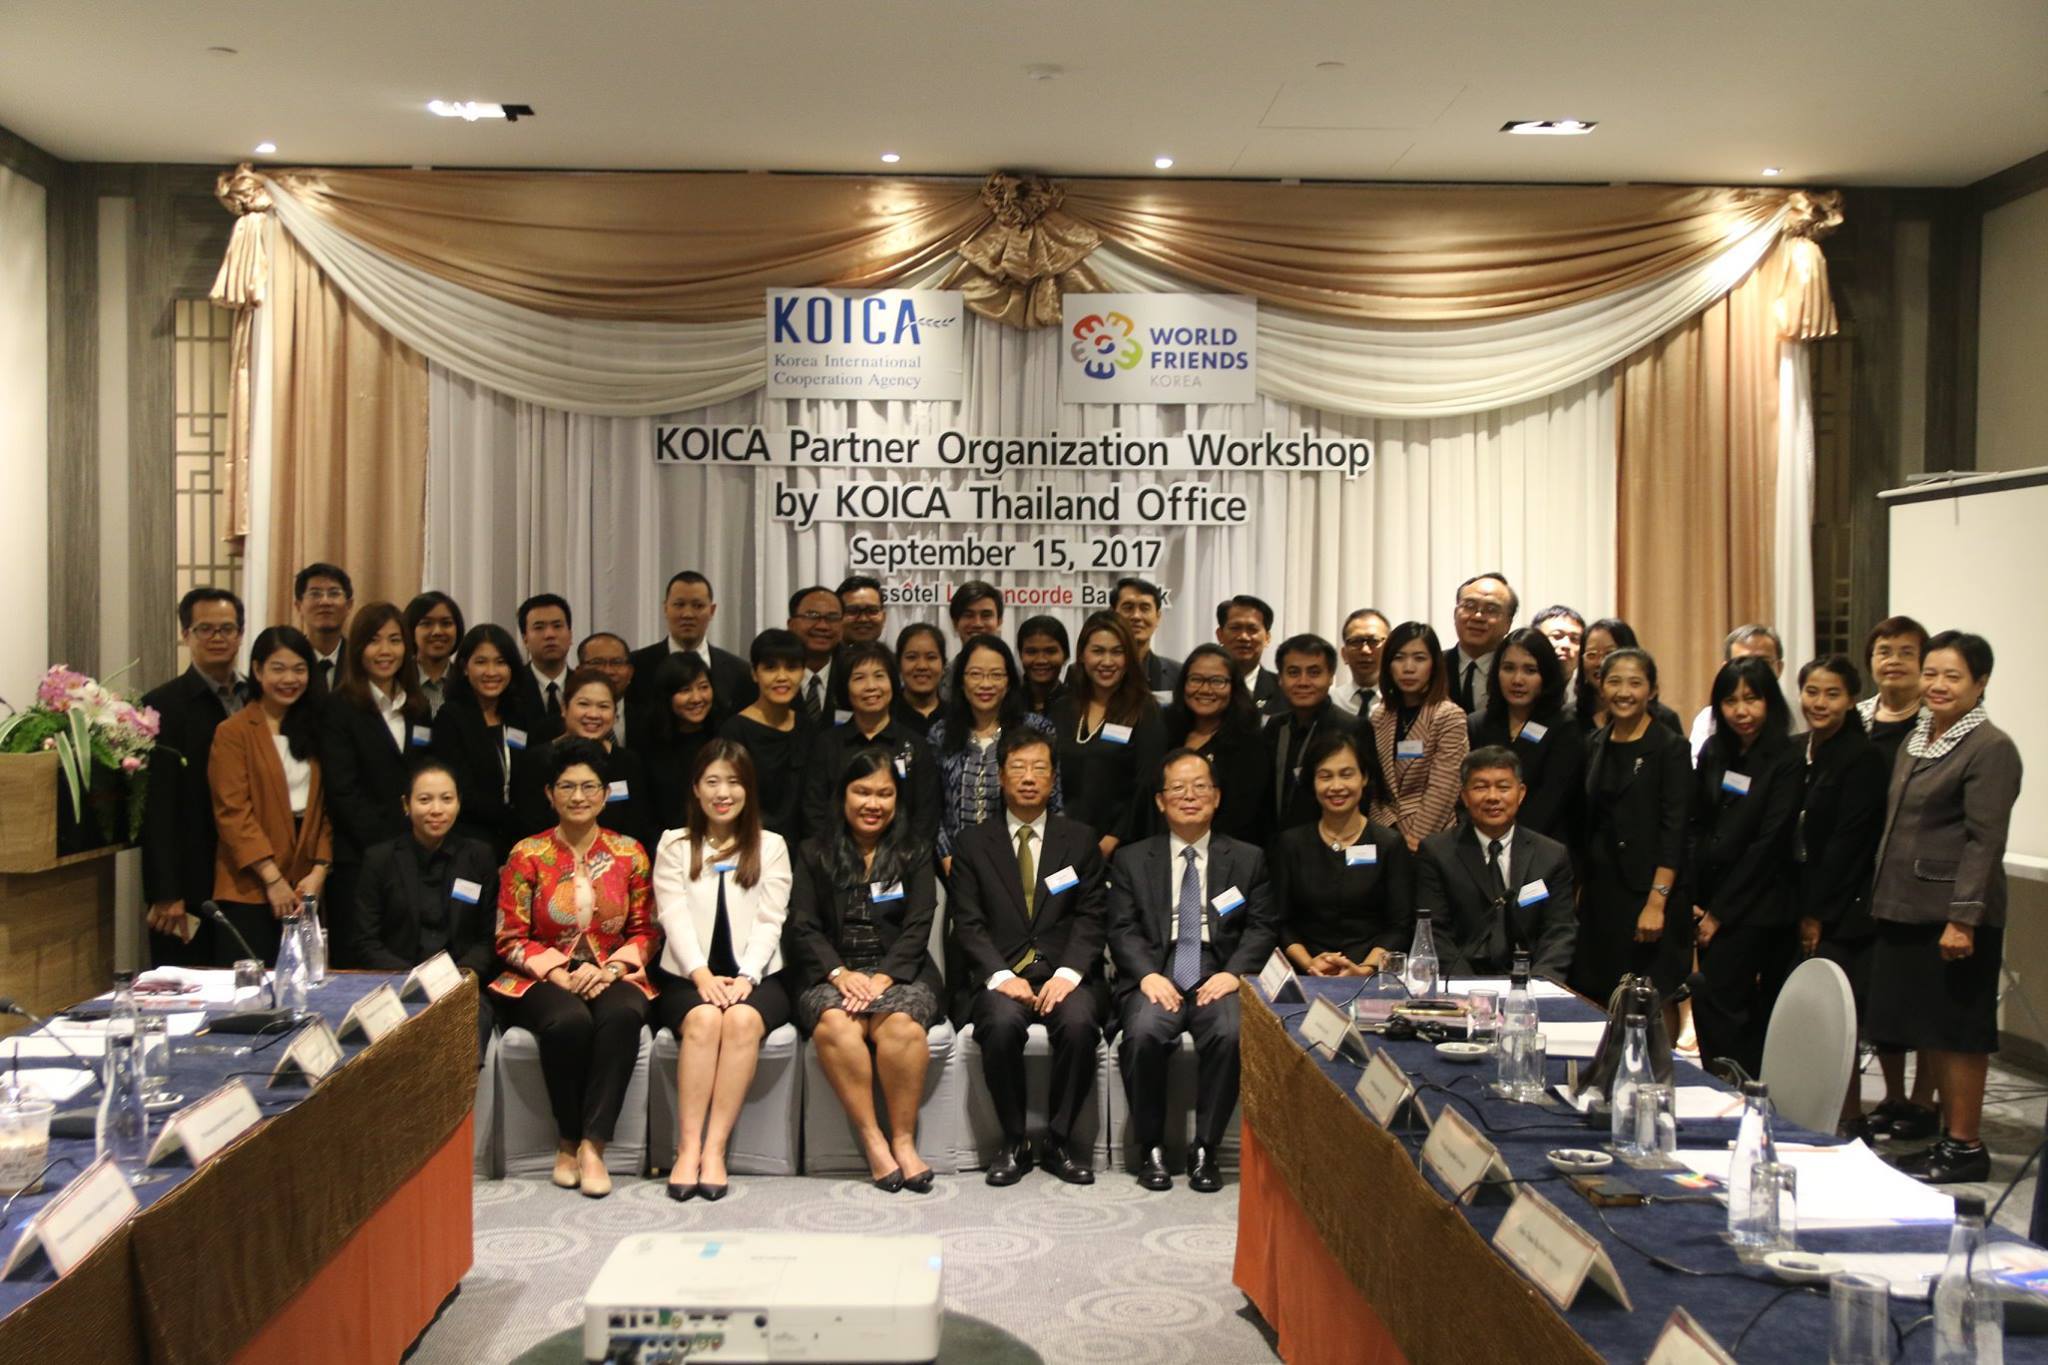 อาจารย์ชิดชนก ยมจินดา เป็นตัวแทนตัวแทนโปรแกรมวิชาภาษาเกาหลี คณะมนุษยศาสตร์ มหาวิทยาลัยราชภัฏเชียงราย เข้าร่วมบรรยายและแลกเปลี่ยนประสบการณ์ในงาน KOICA Partner Organization Workshop by KOICA Thailand Office